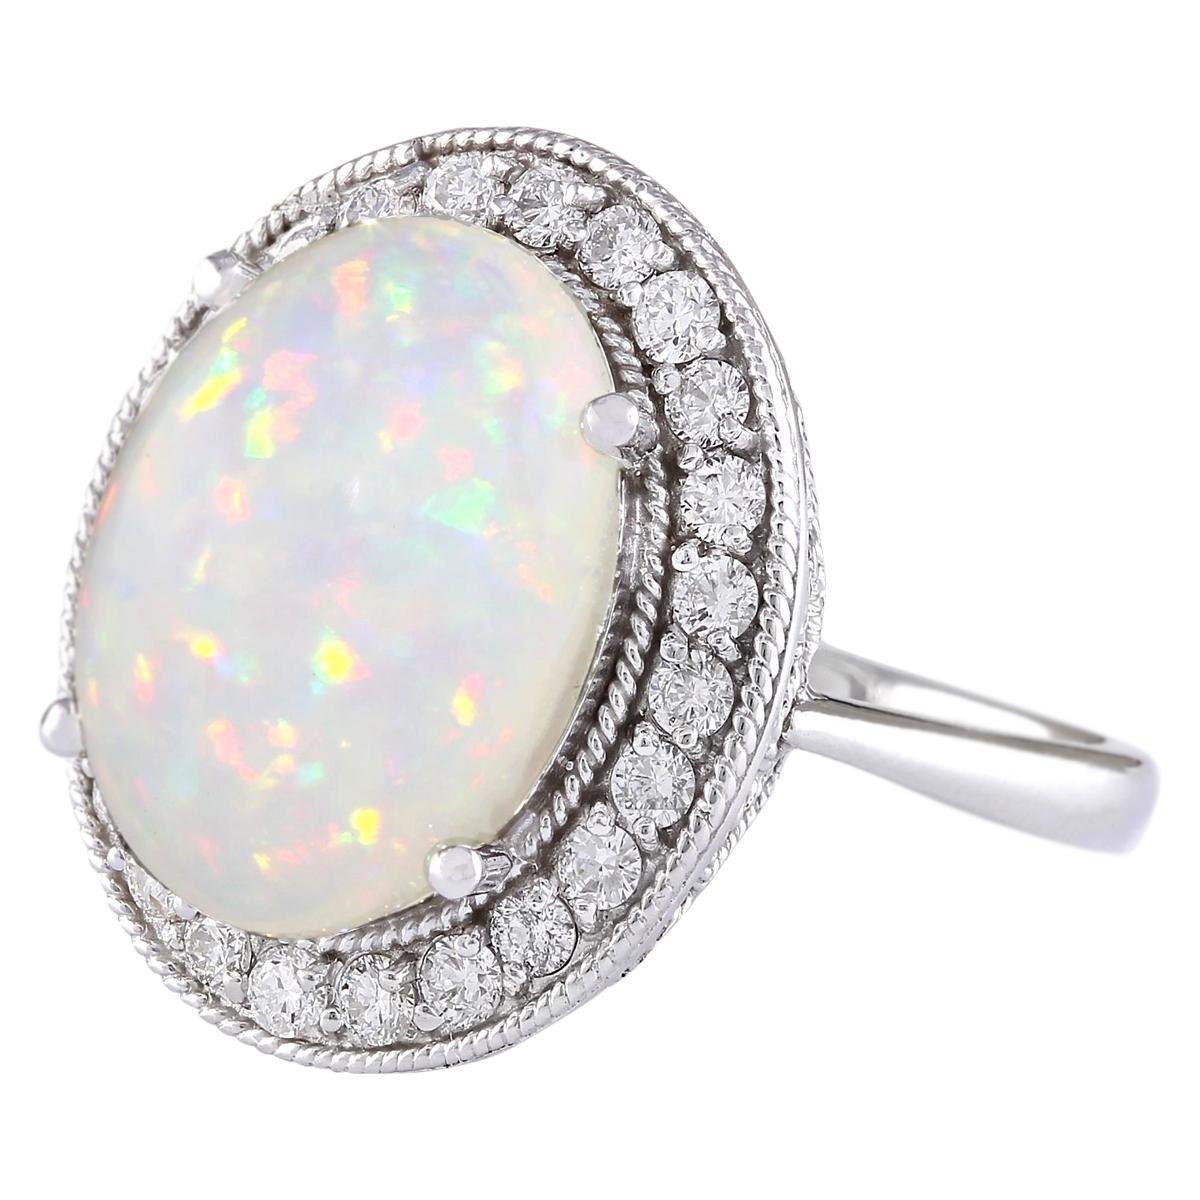 6.45 Carat Natural Opal 14 Karat White Gold Diamond Ring
Stamped: 14K White Gold
Total Ring Weight: 7.8 Grams
Total Natural Opal Weight is 5.75 Carat (Measures: 16.00x12.00 mm)
Color: Multicolor
Total Natural Diamond Weight is 0.70 Carat
Color: F-G,